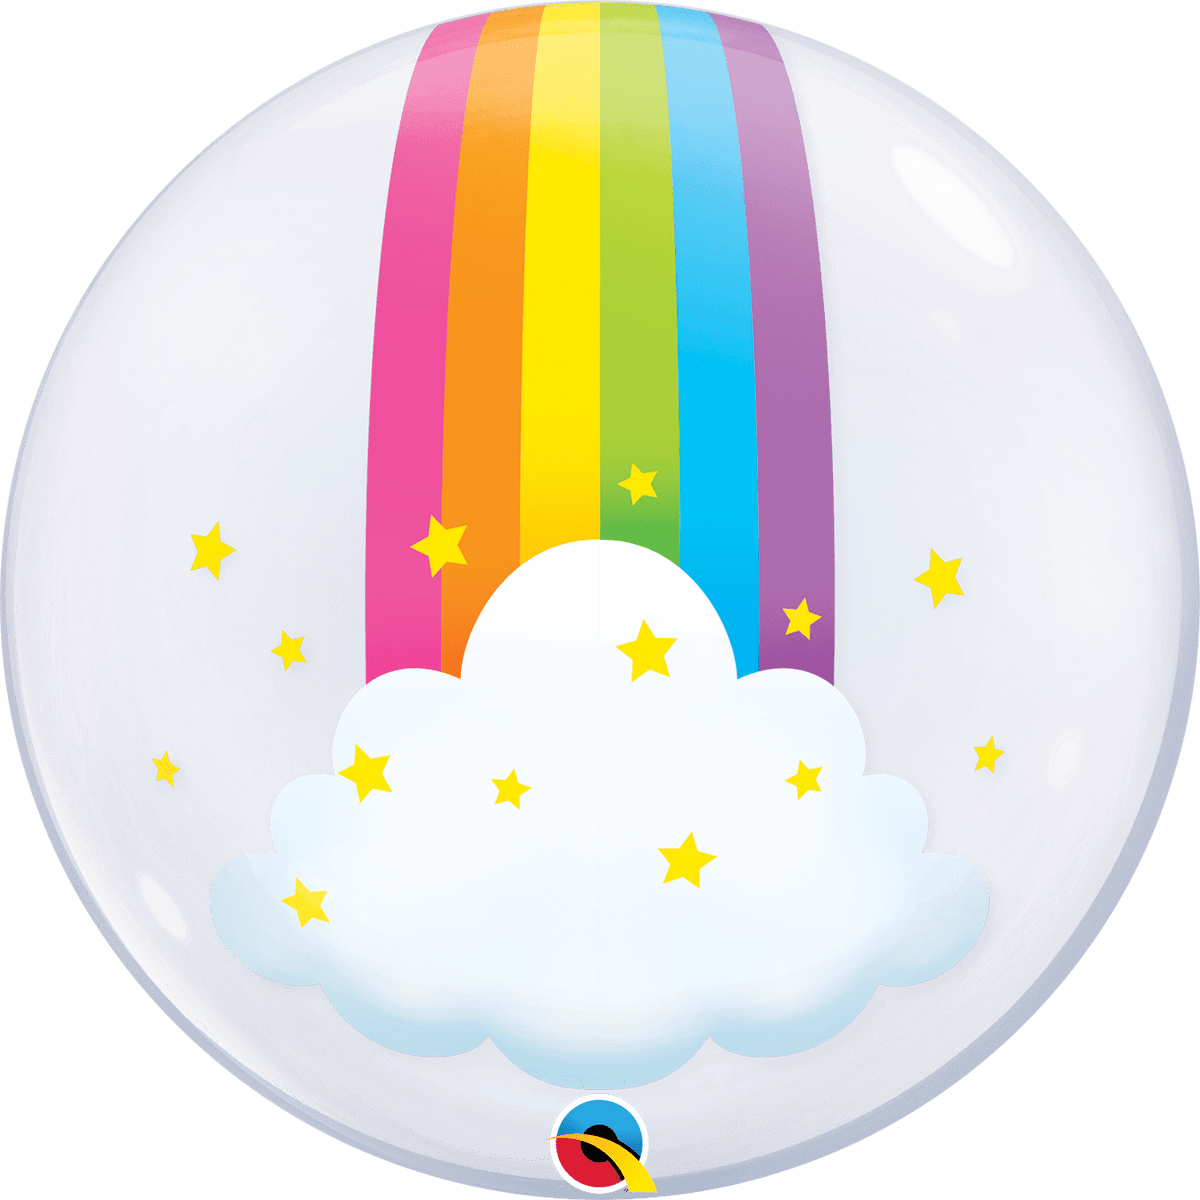 Pastel Balloon Arch Kit, 53 Pcs Rainbow Clouds Balloon Kit